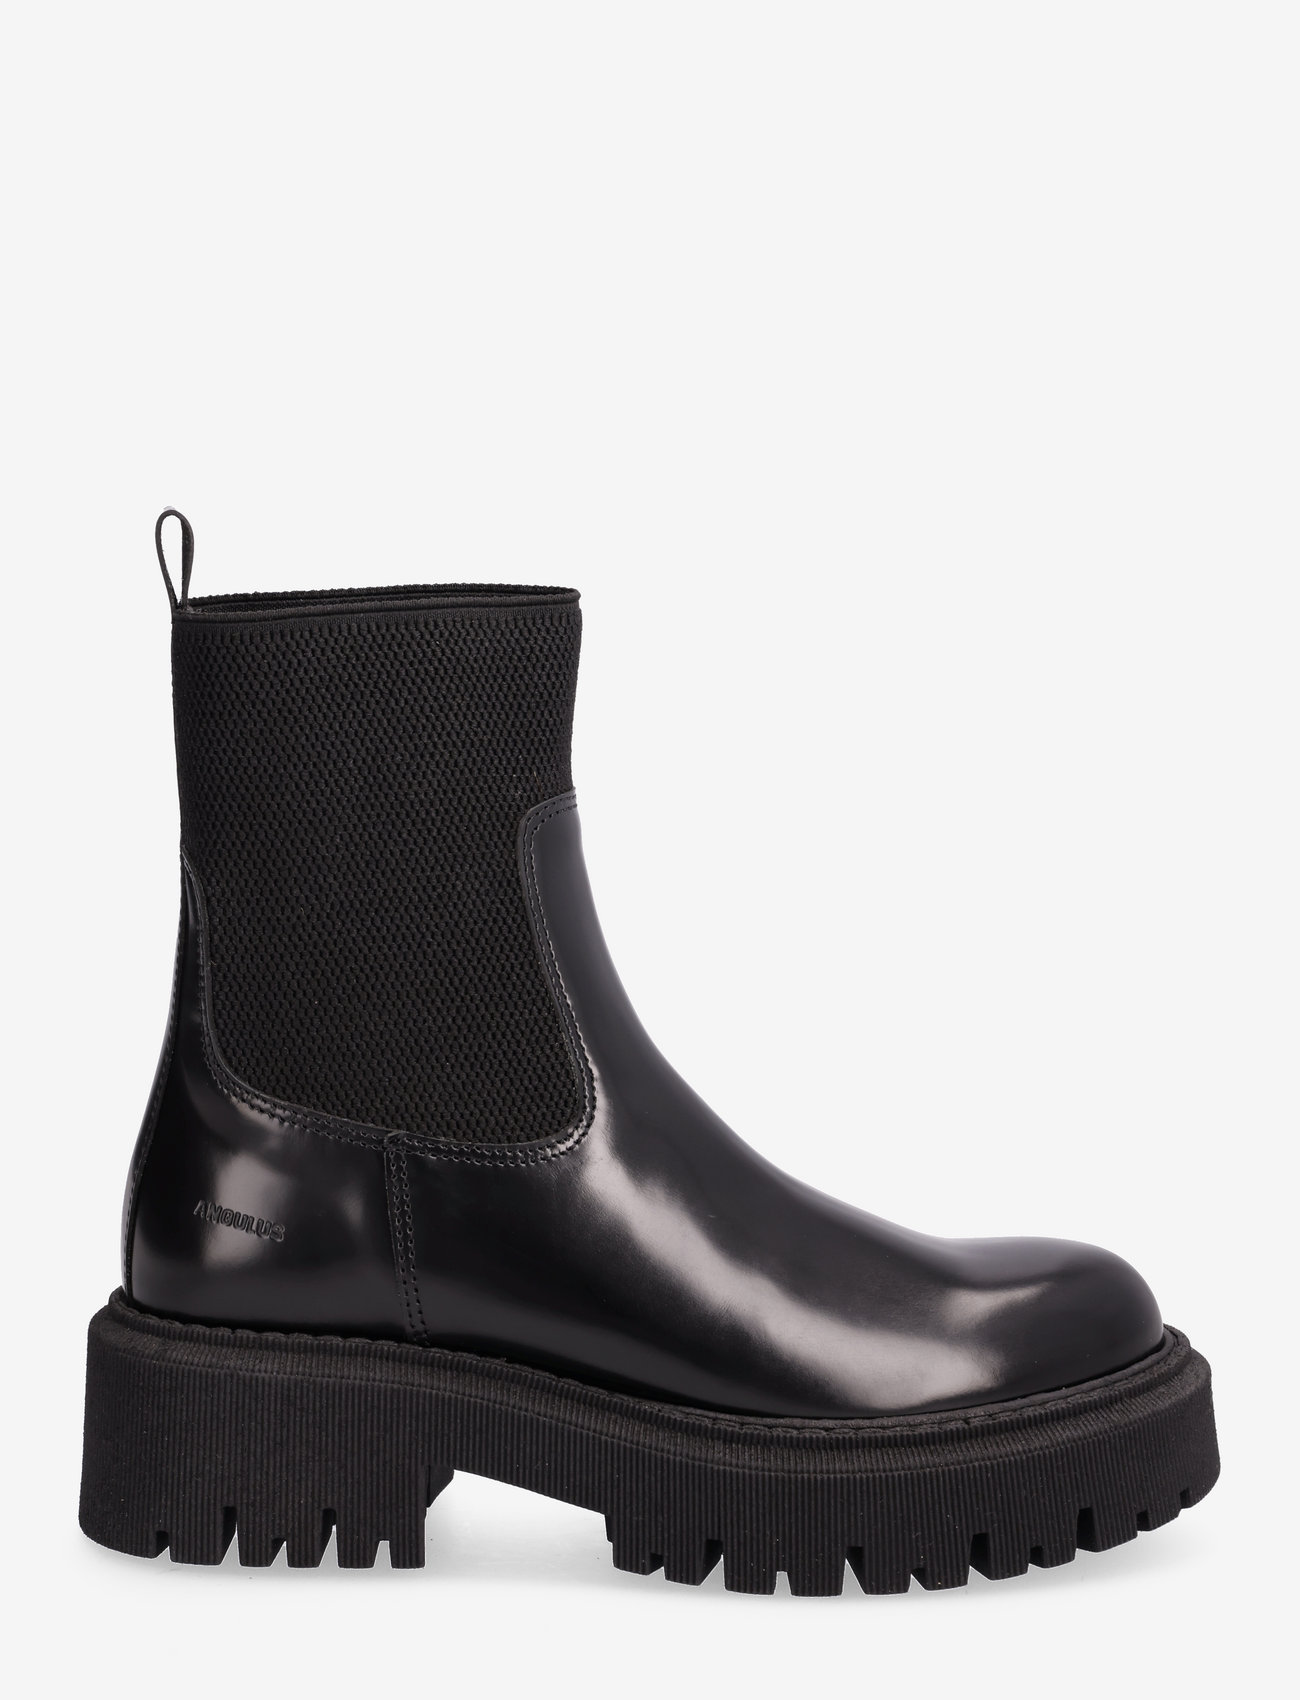 ANGULUS - Boots - flat - tasapohjaiset nilkkurit - 1425/053 black/black - 1